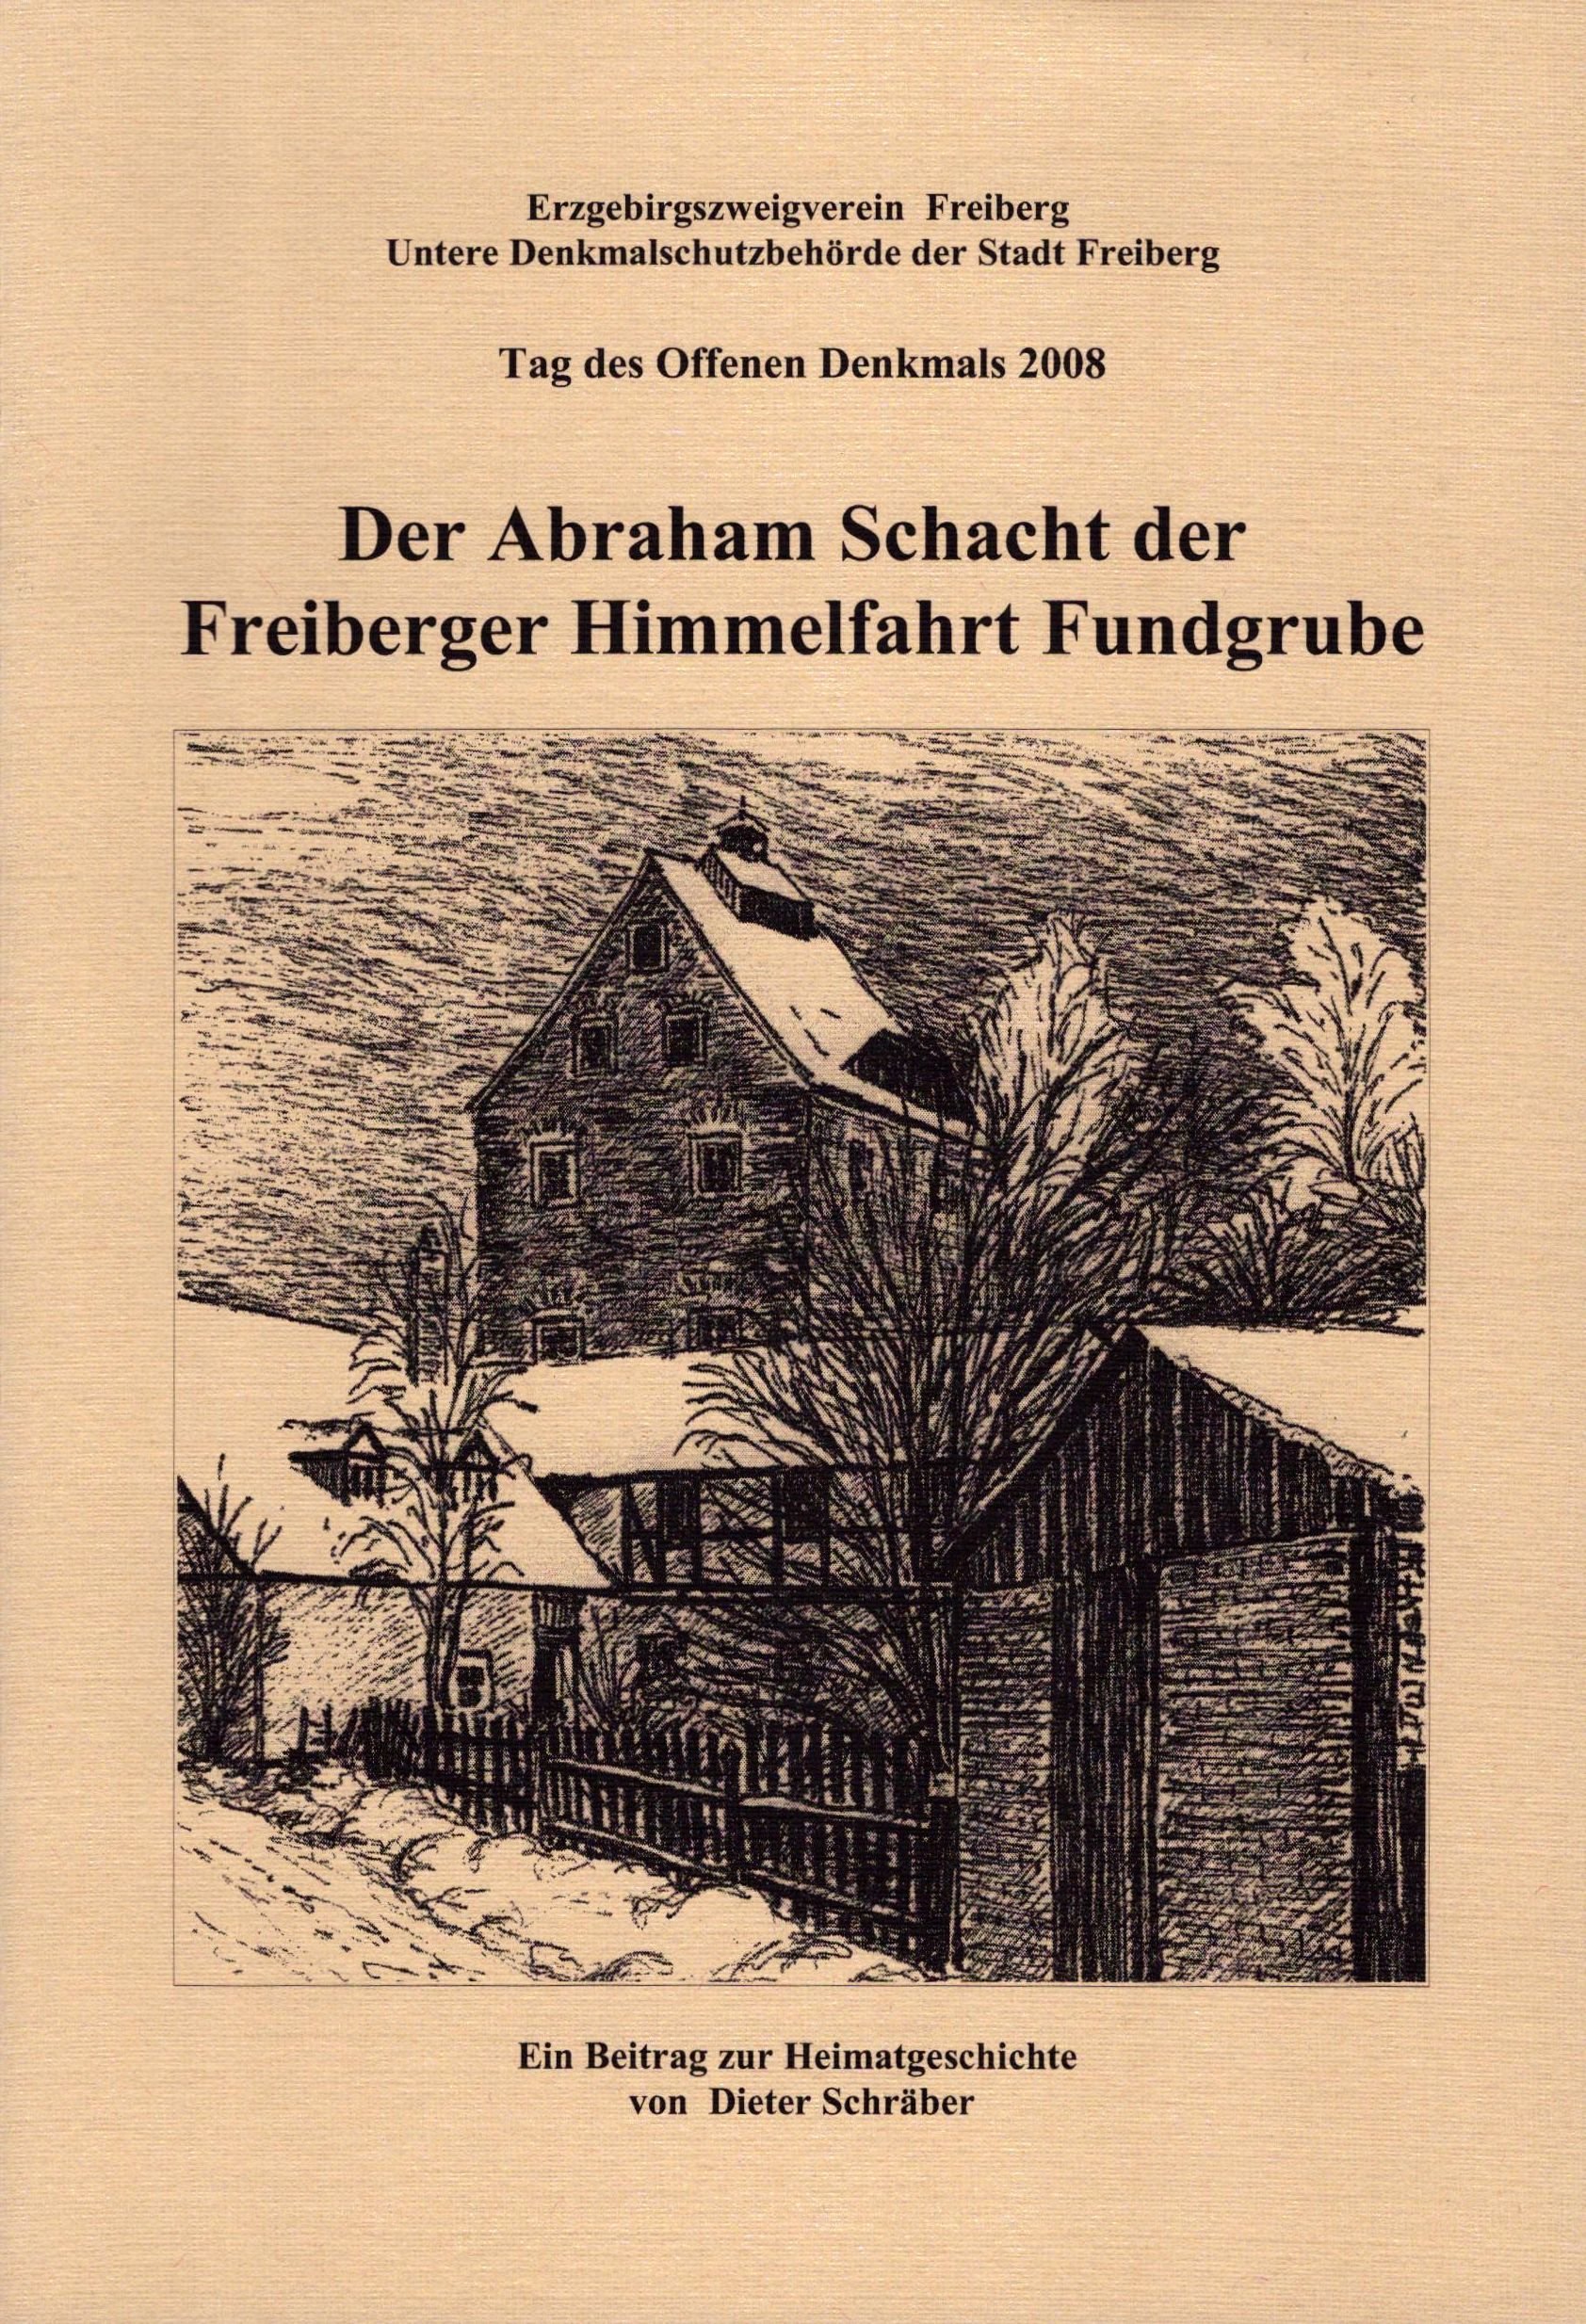 Der Abraham Schacht der Freiberger Himmelfahrt Fundgrube (Archiv SAXONIA-FREIBERG-STIFTUNG CC BY-NC-SA)